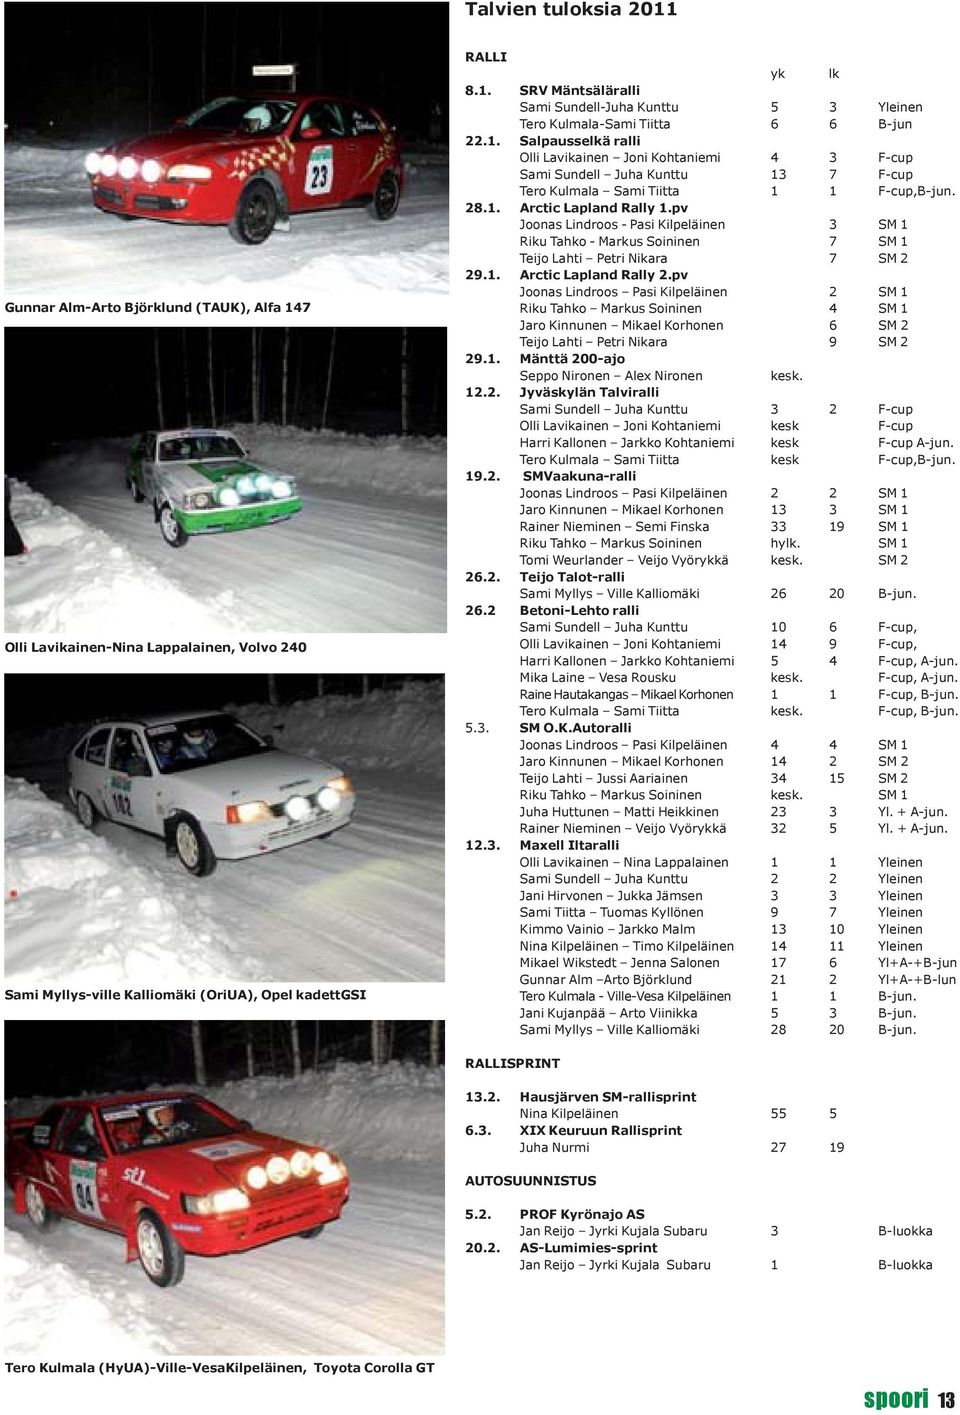 pv Joonas Lindroos - Pasi Kilpeläinen 3 SM 1 Riku Tahko - Markus Soininen 7 SM 1 Teijo Lahti Petri Nikara 7 SM 2 29.1. Arctic Lapland Rally 2.